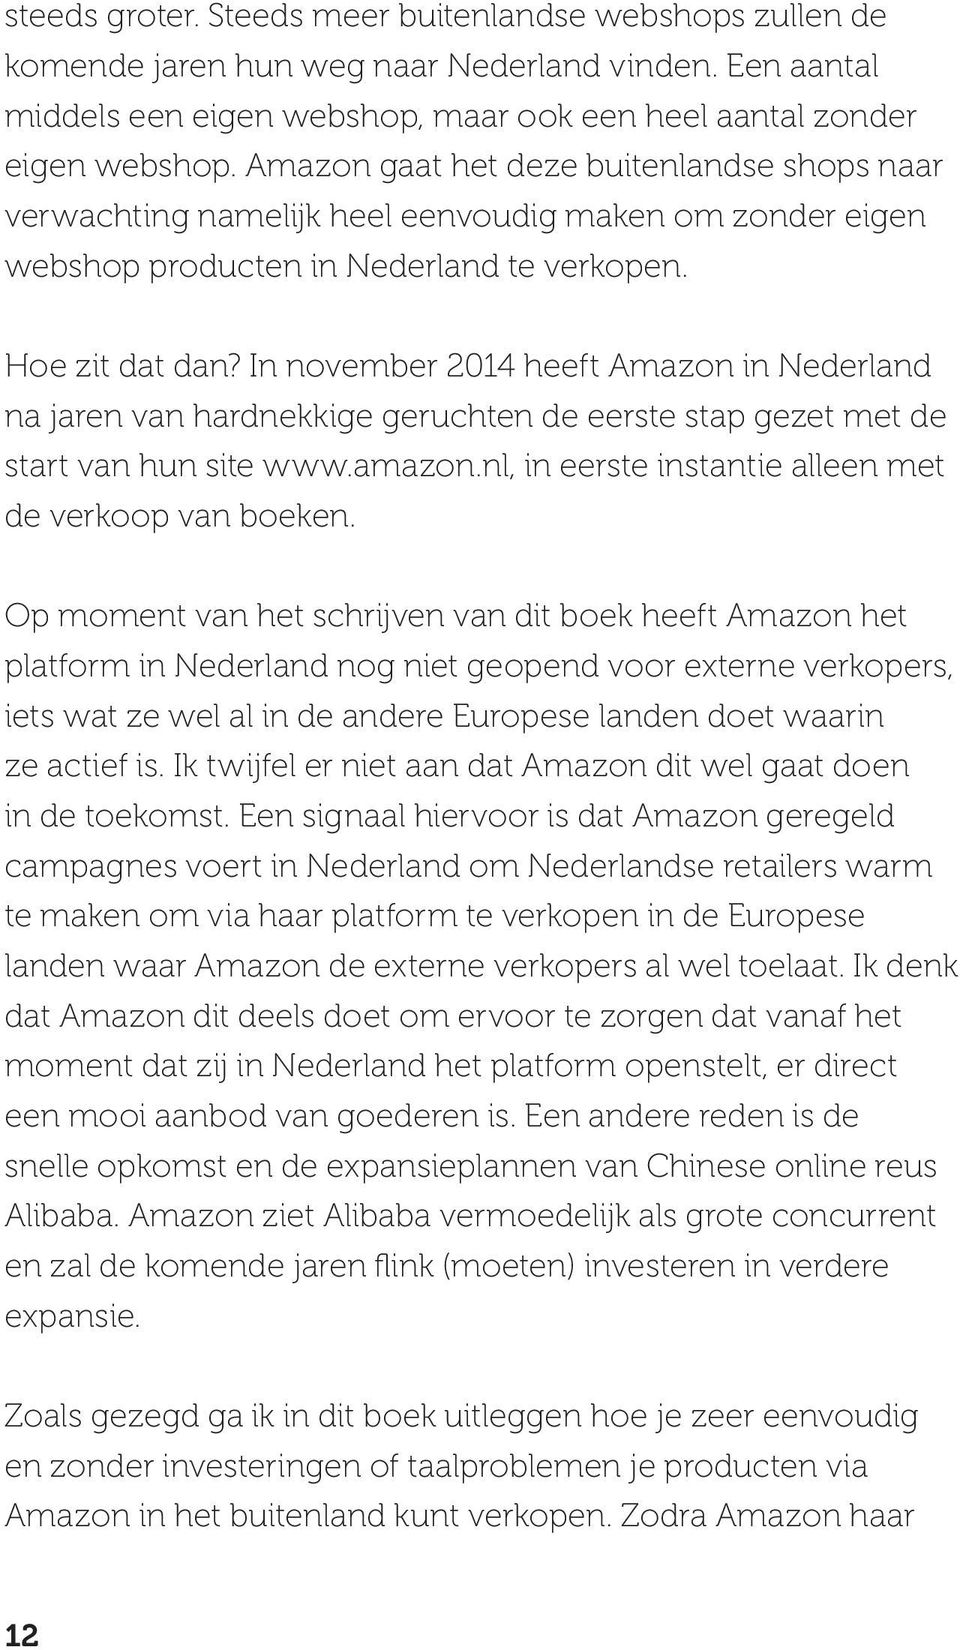 In november 2014 heeft Amazon in Nederland na jaren van hardnekkige geruchten de eerste stap gezet met de start van hun site www.amazon.nl, in eerste instantie alleen met de verkoop van boeken.